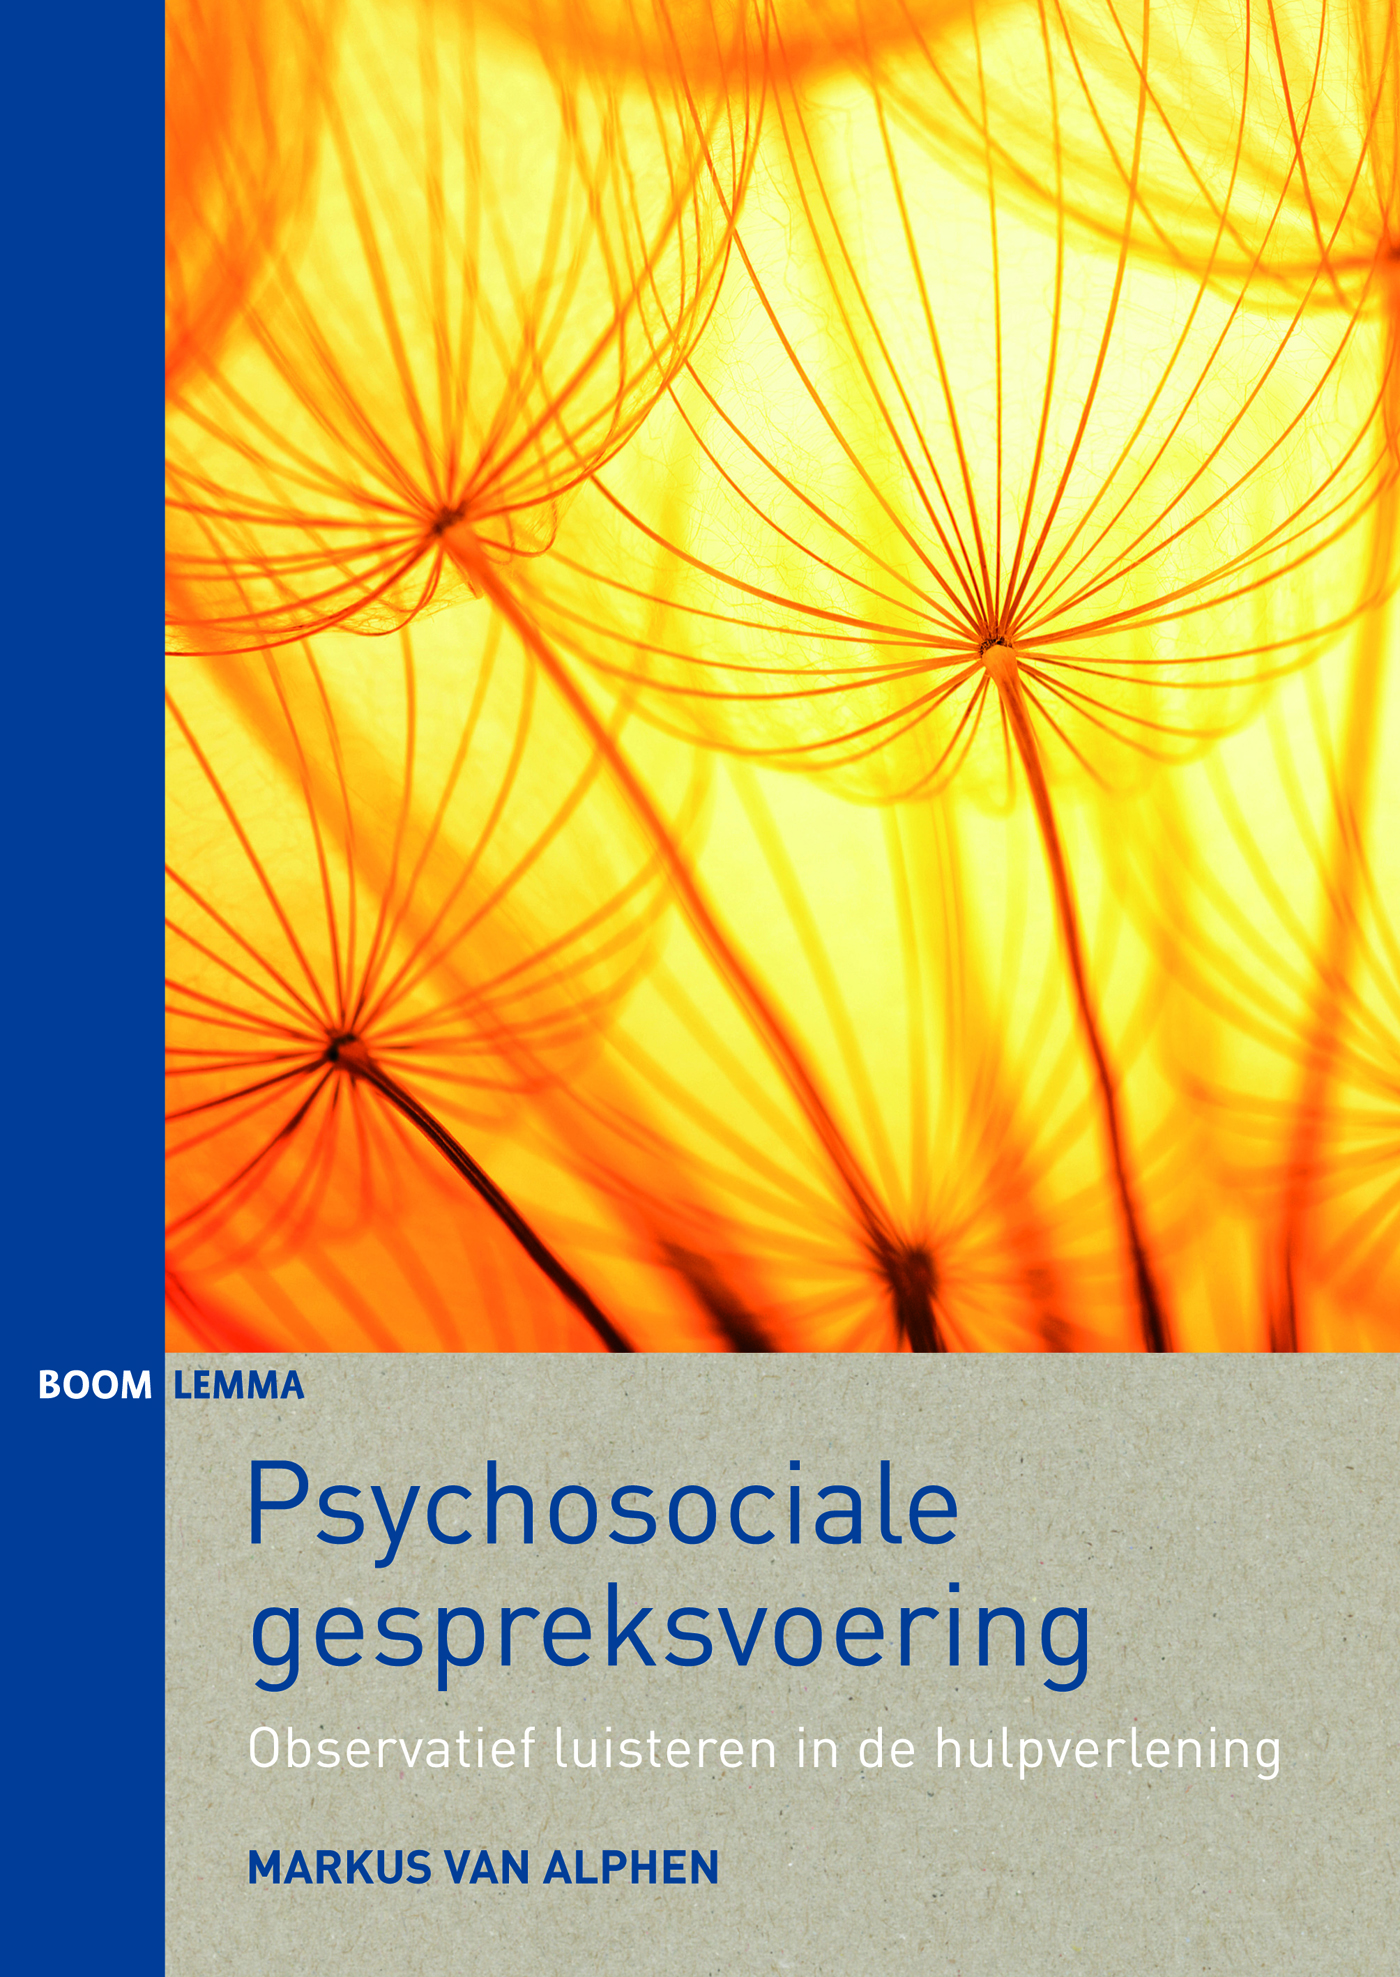 Psychosociale gespreksvoering (Ebook)